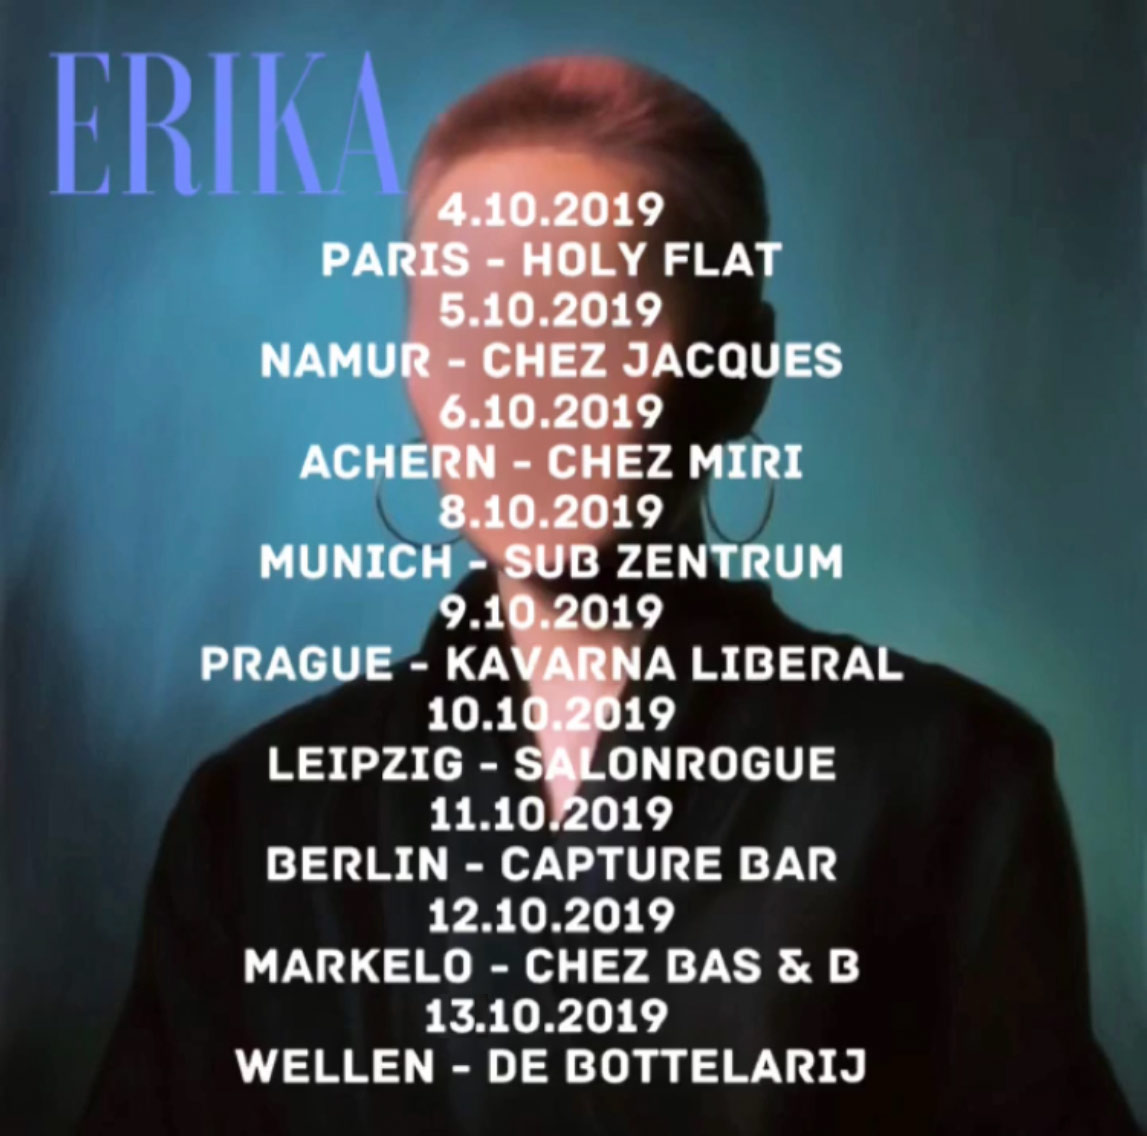 erika-oct-19-tour.jpg